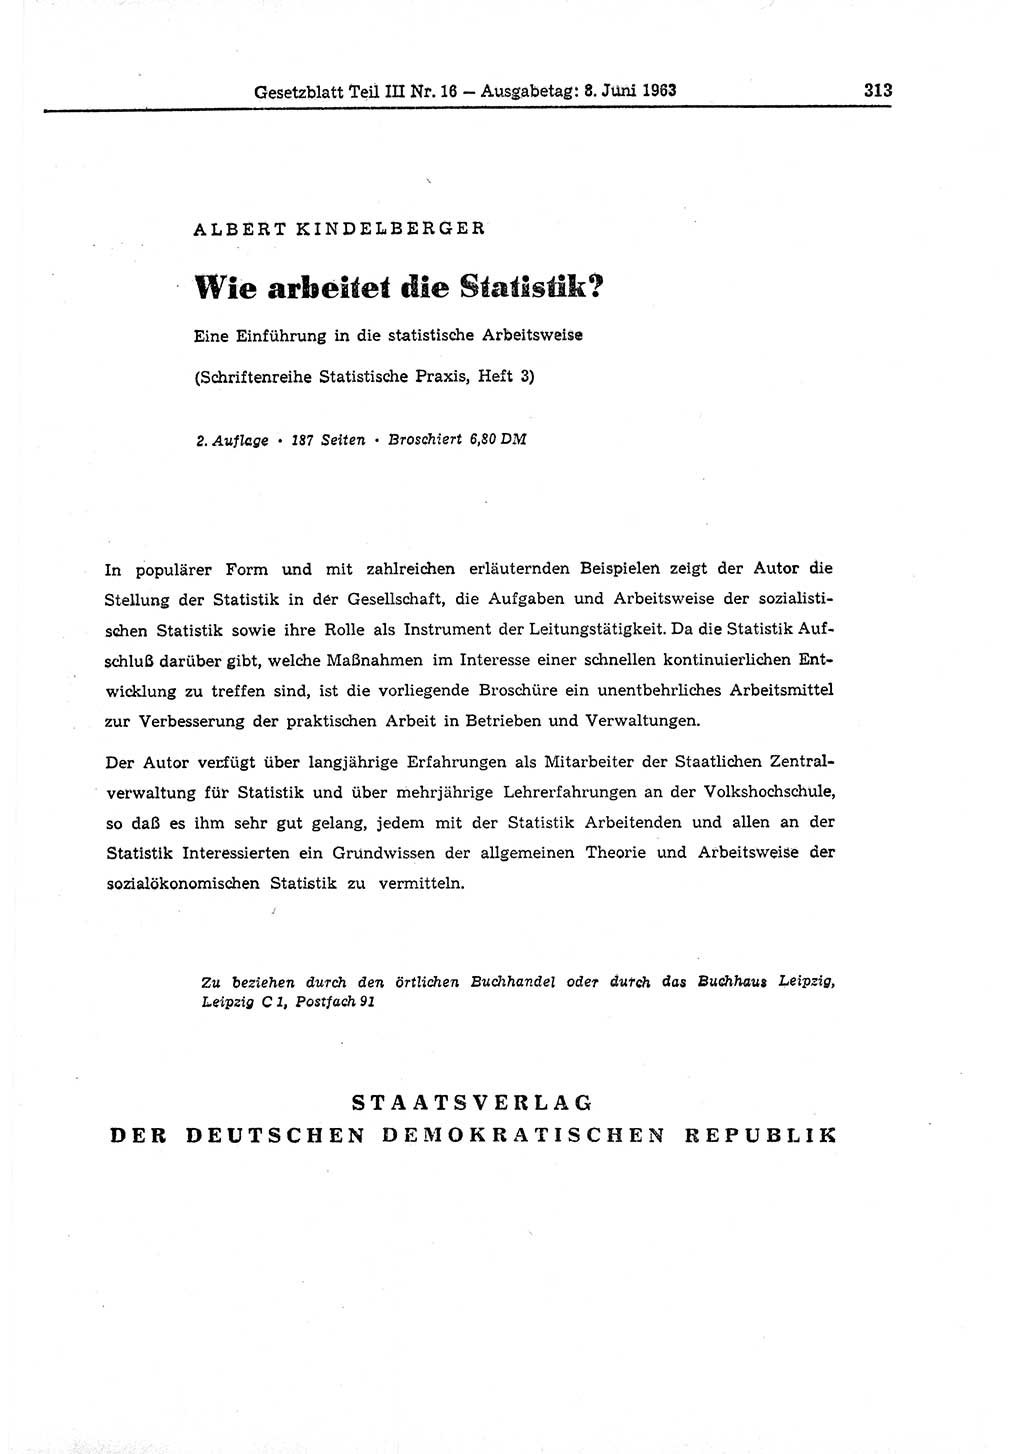 Gesetzblatt (GBl.) der Deutschen Demokratischen Republik (DDR) Teil ⅠⅠⅠ 1963, Seite 313 (GBl. DDR ⅠⅠⅠ 1963, S. 313)